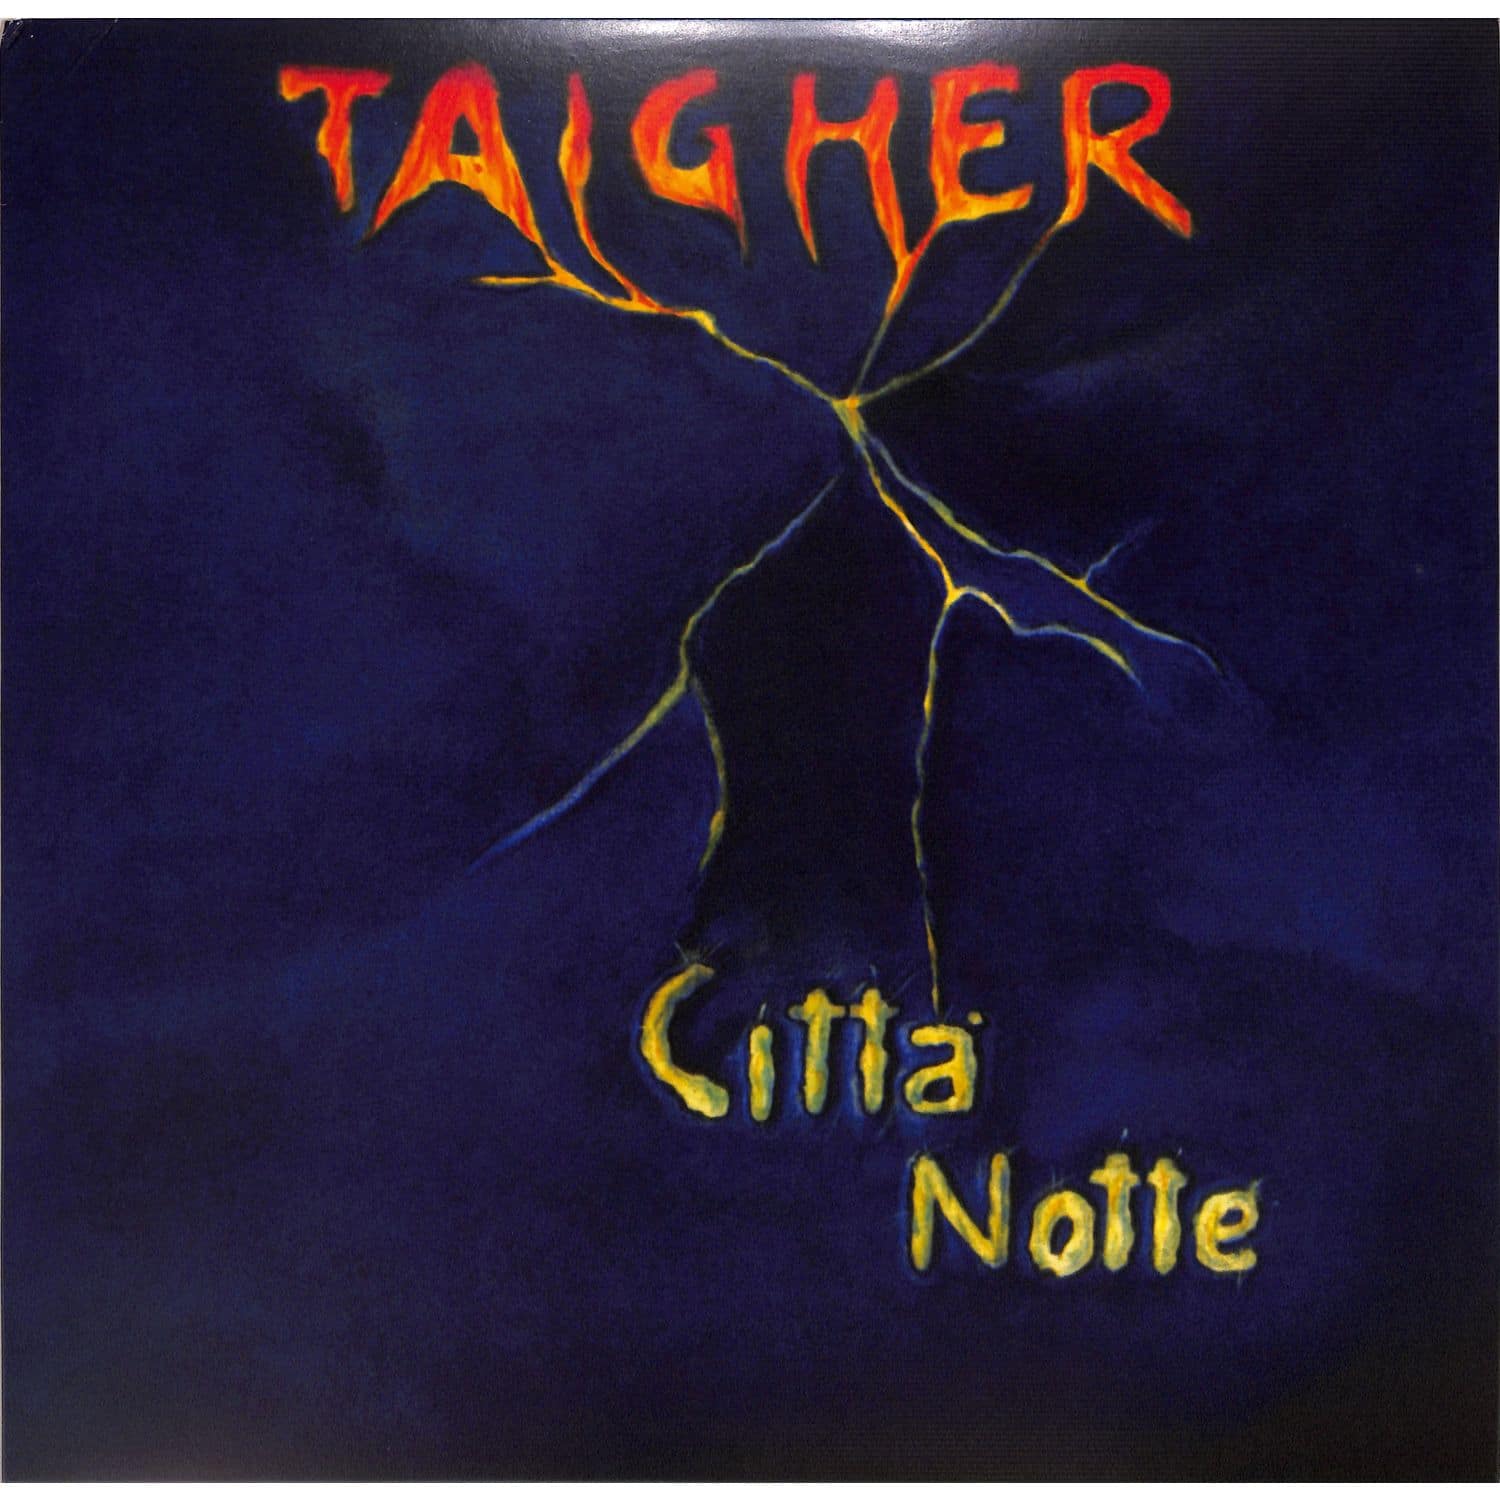 Taigher - CITT / NOTTE